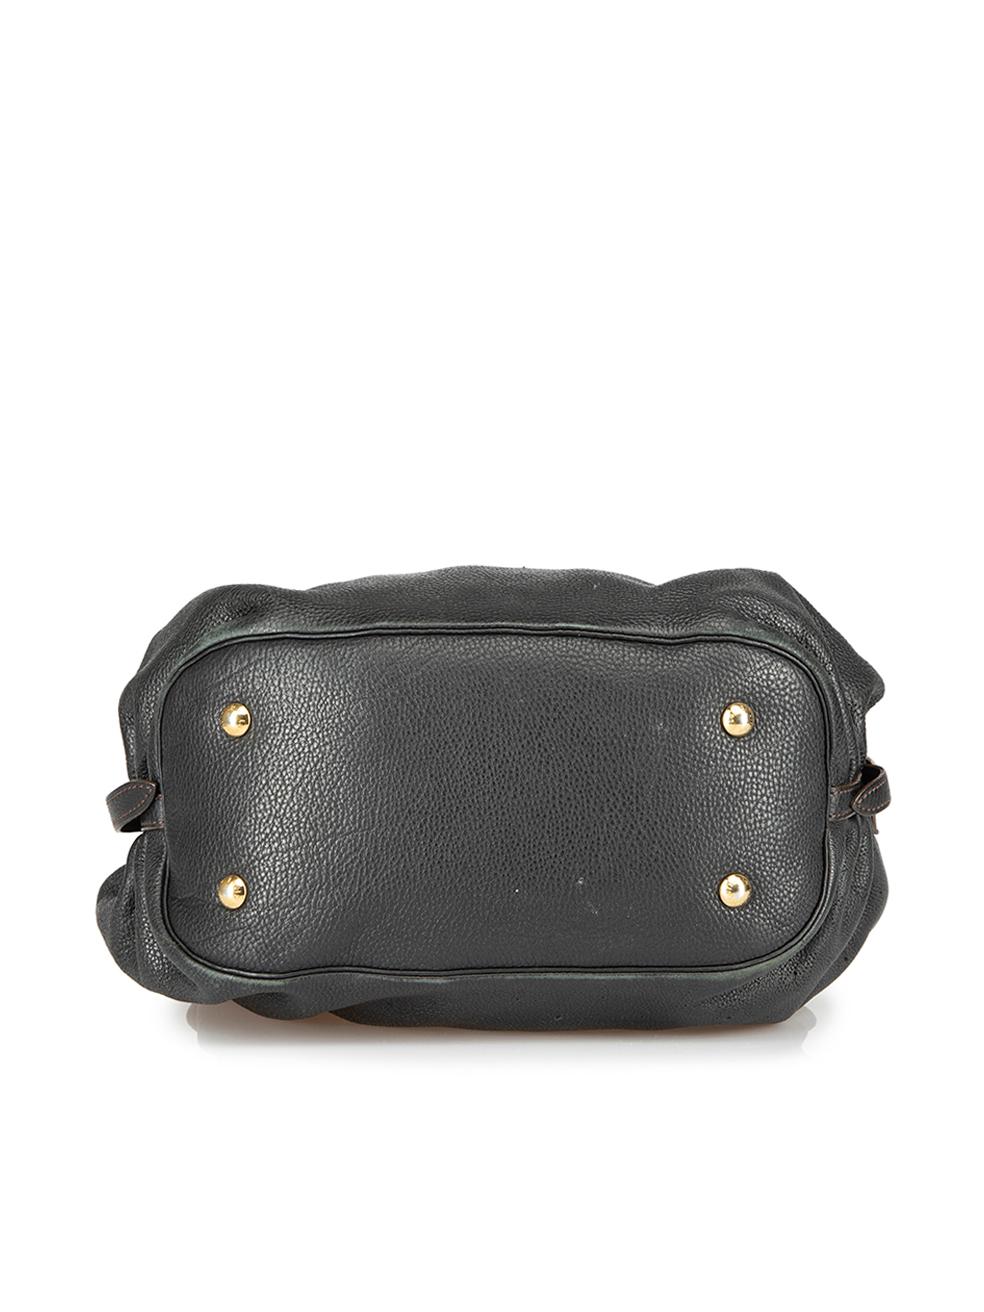 Louis Vuitton Women's Black Mahina XL Hobo Bag 1